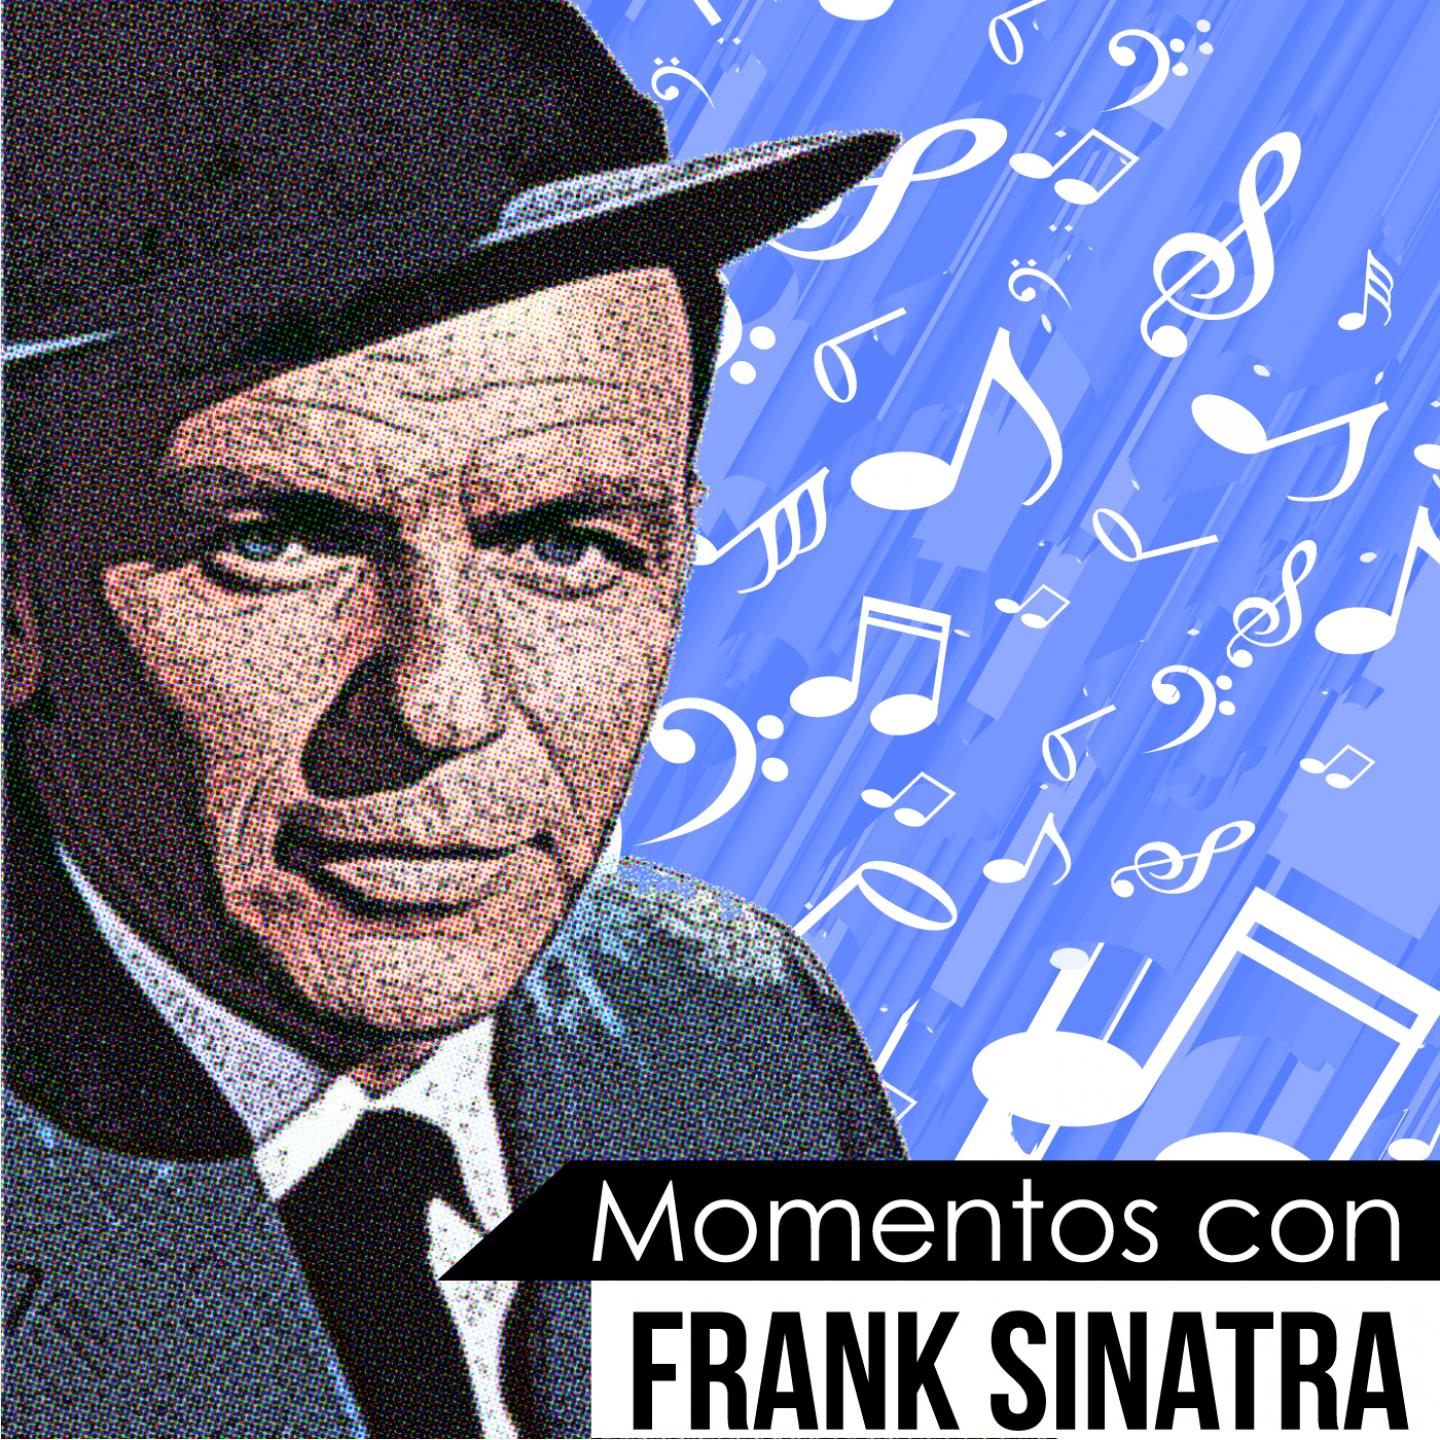 My Funny Valentine (Momentos Con Frank Sinatra)